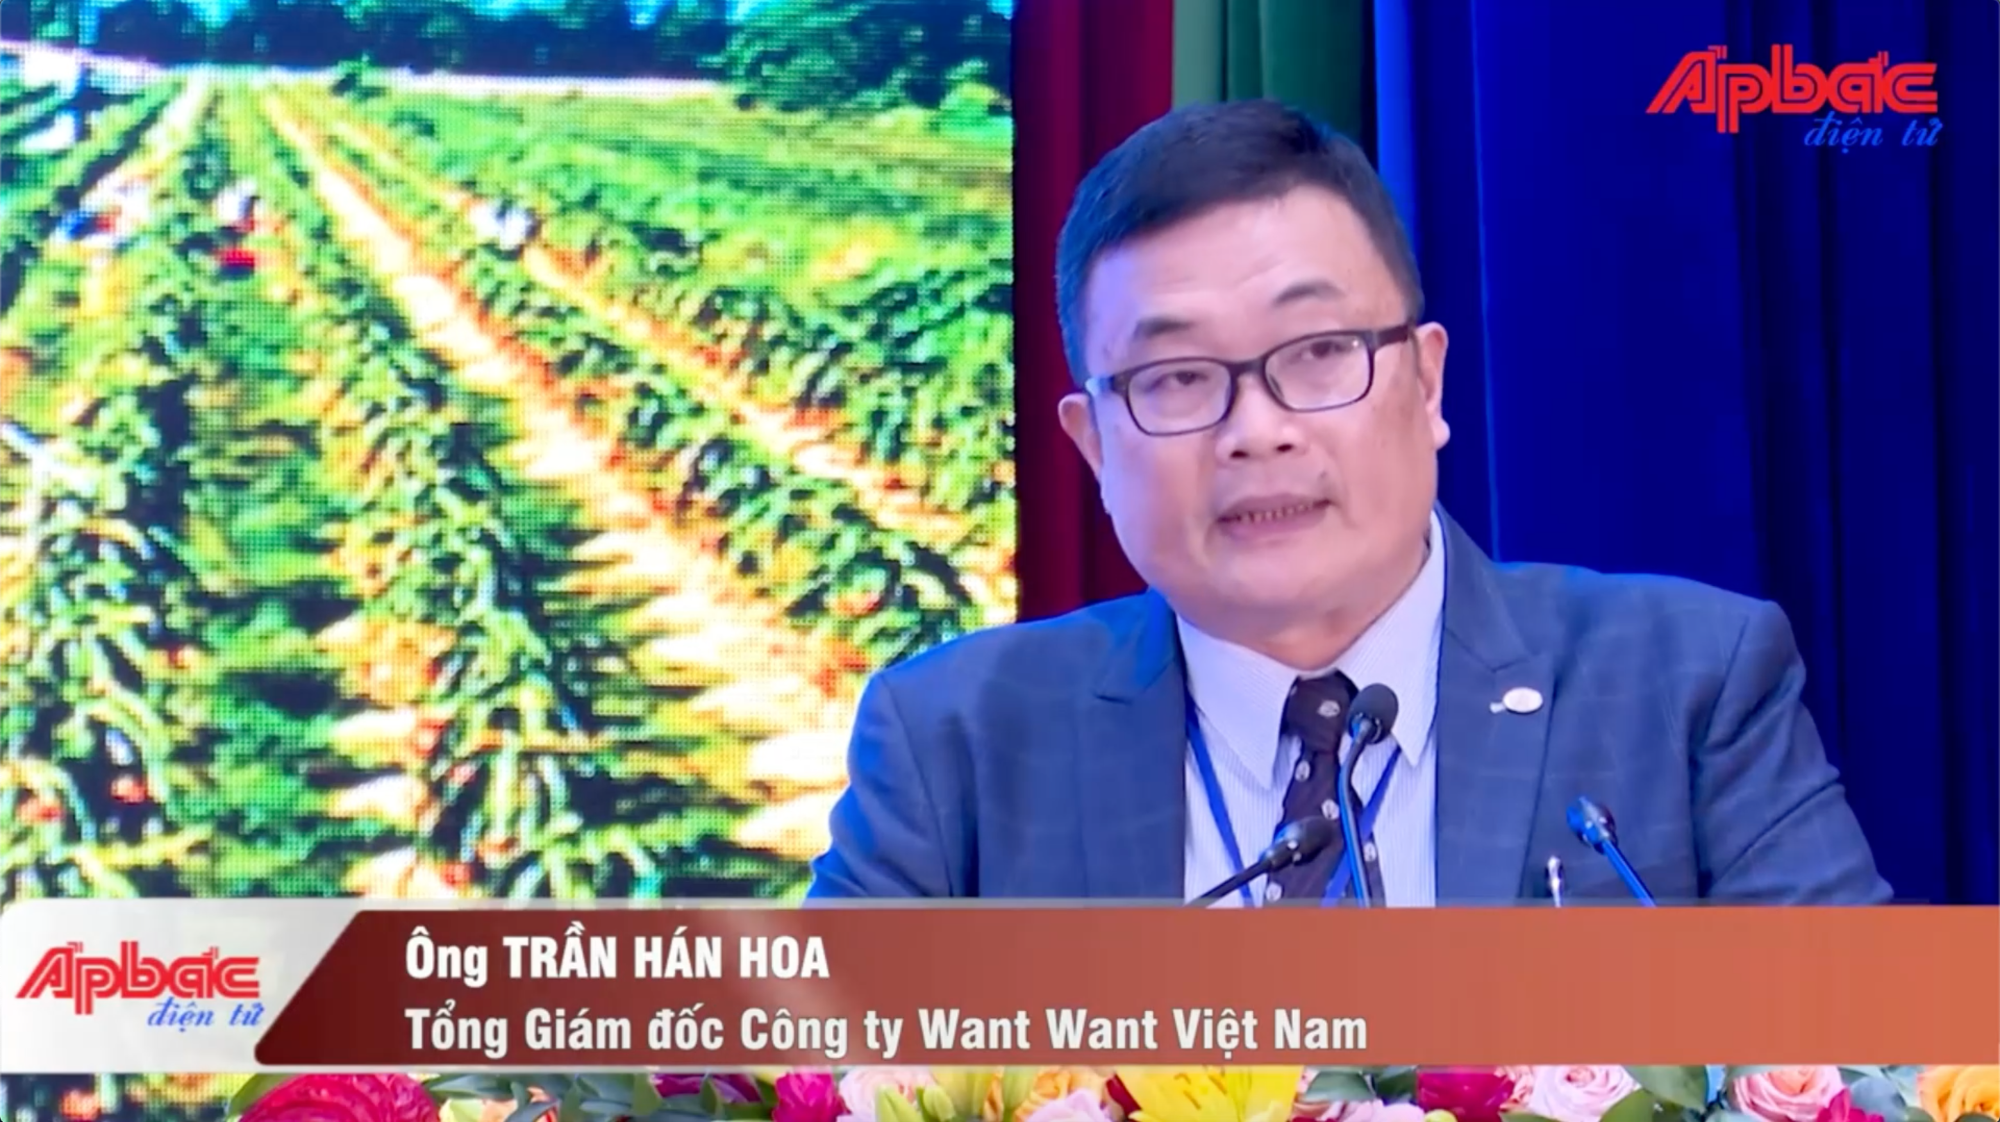 Ngài Trần Hán Hoa - Tổng Giám đốc Công ty Want Want Việt Nam - phát biểu tại Hội nghị